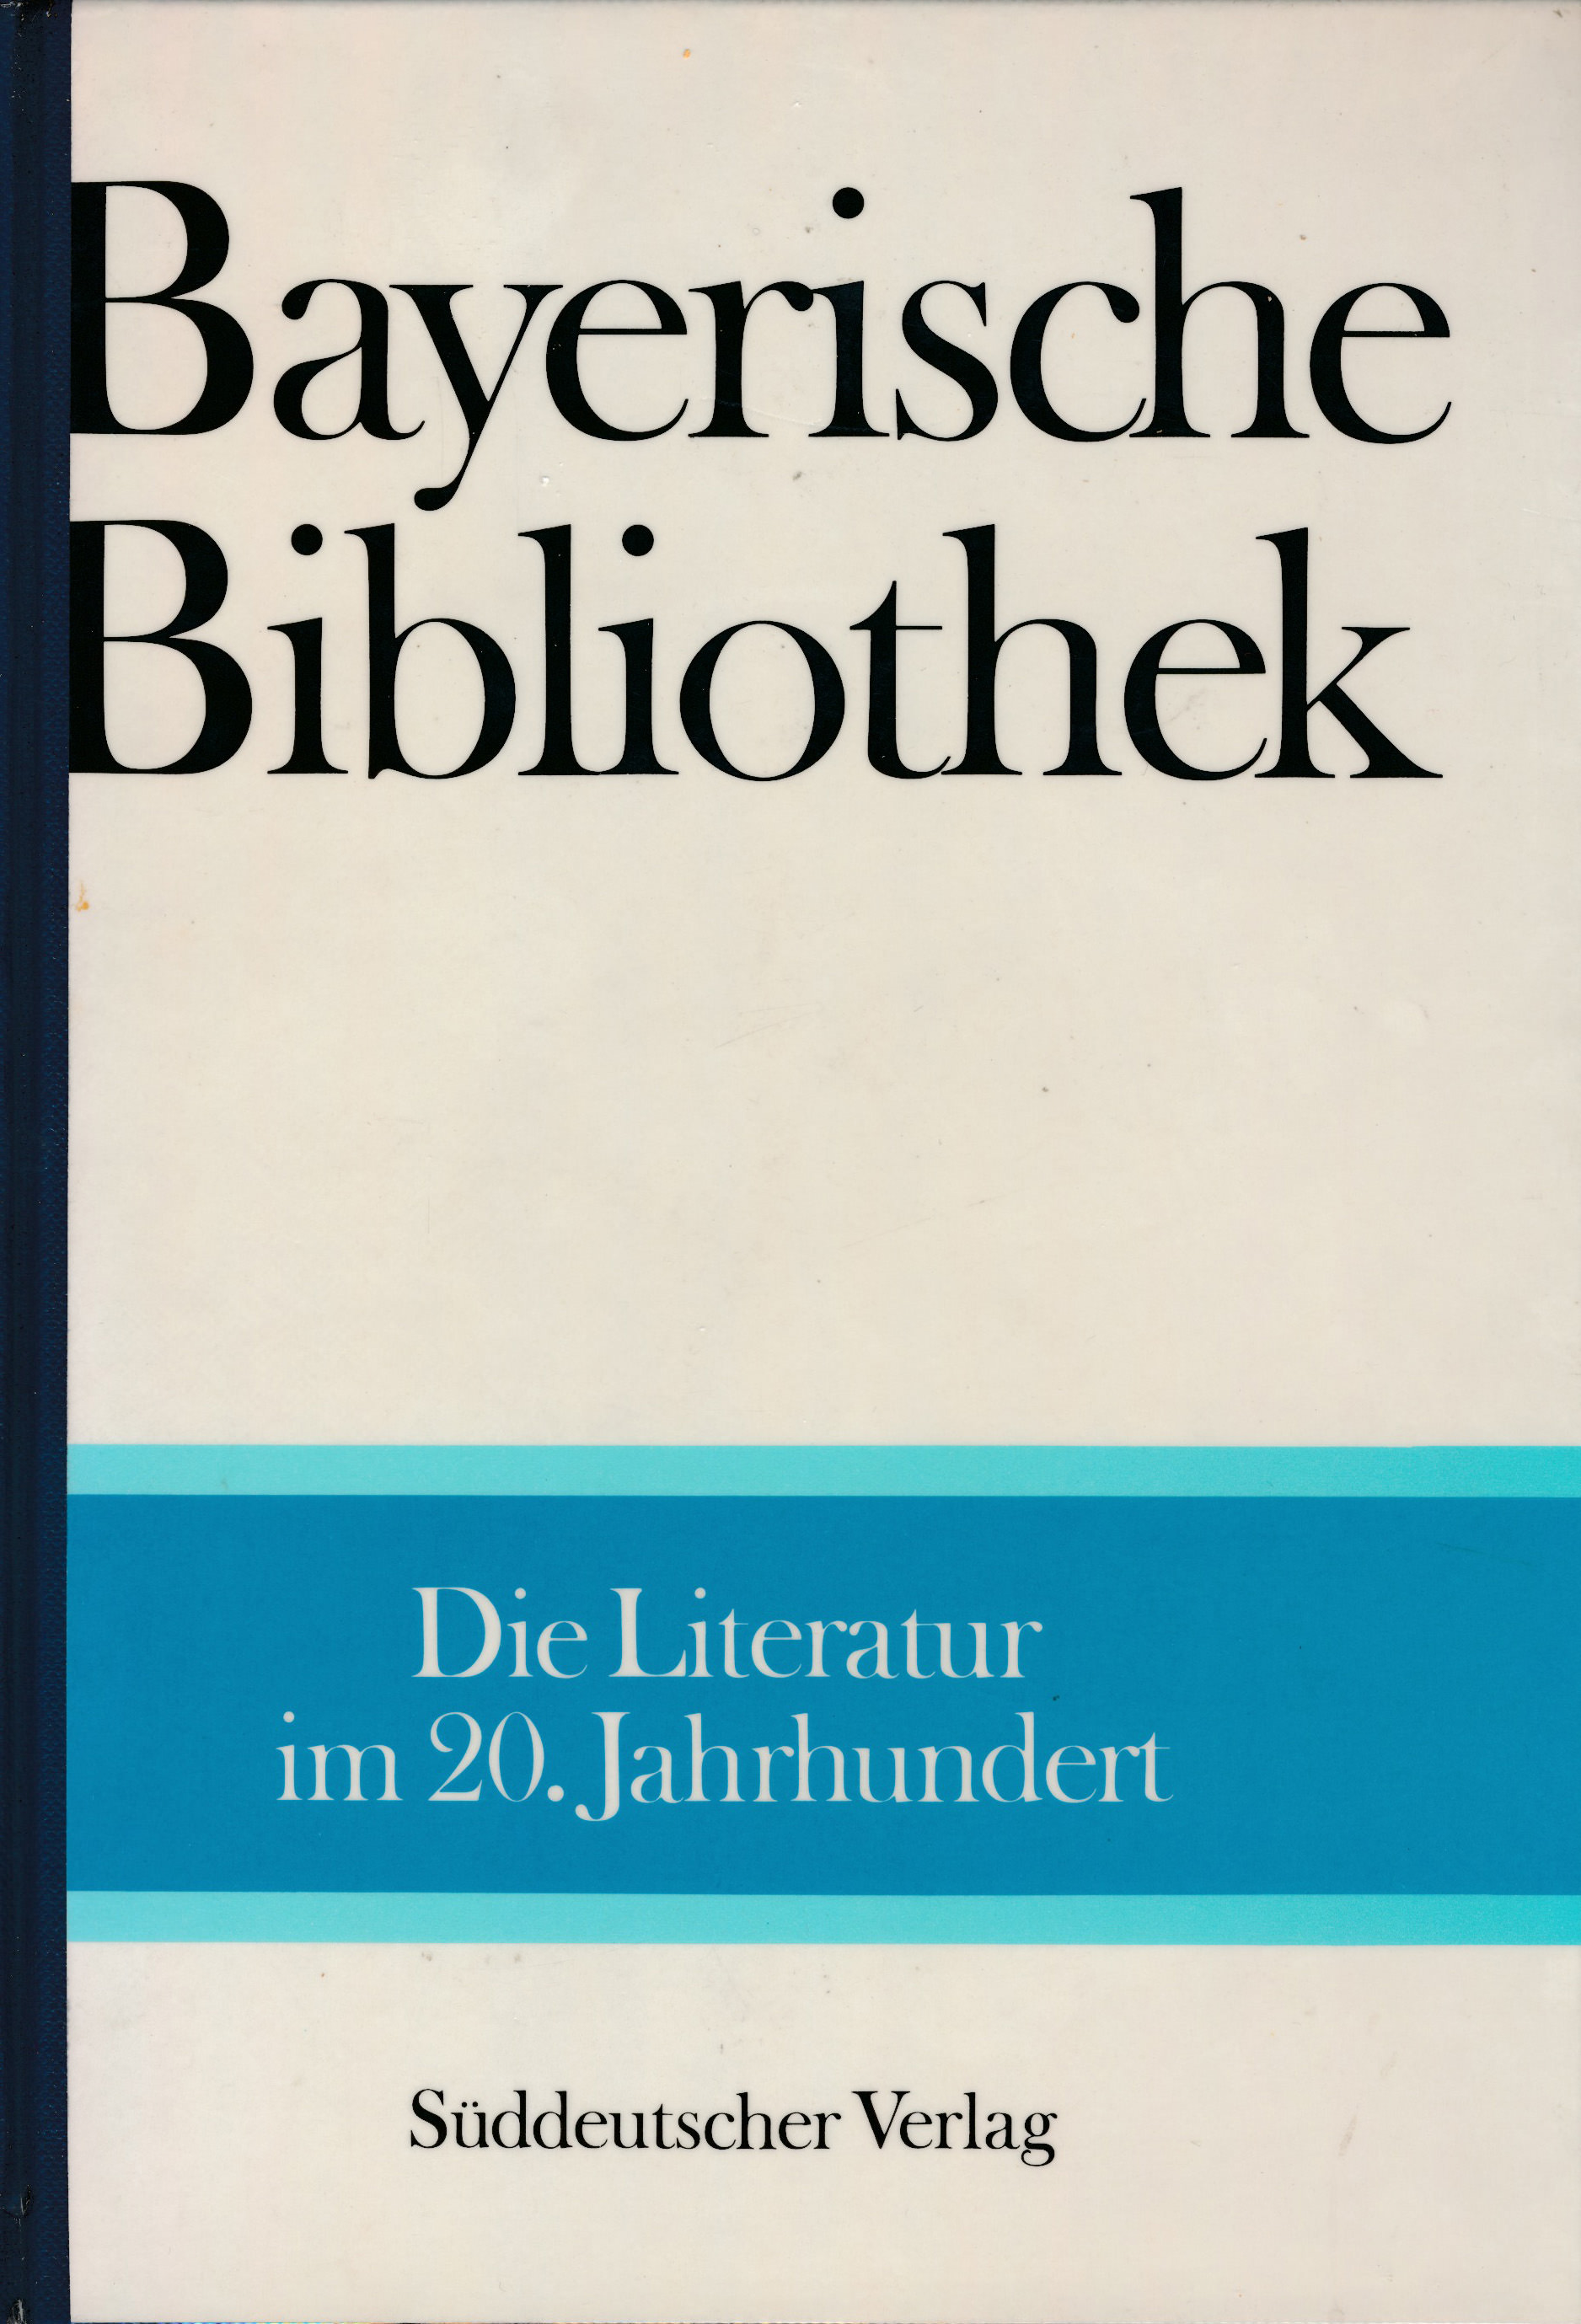 Die Literatur im 20. Jahrhundert. Bayerische Bibliothek